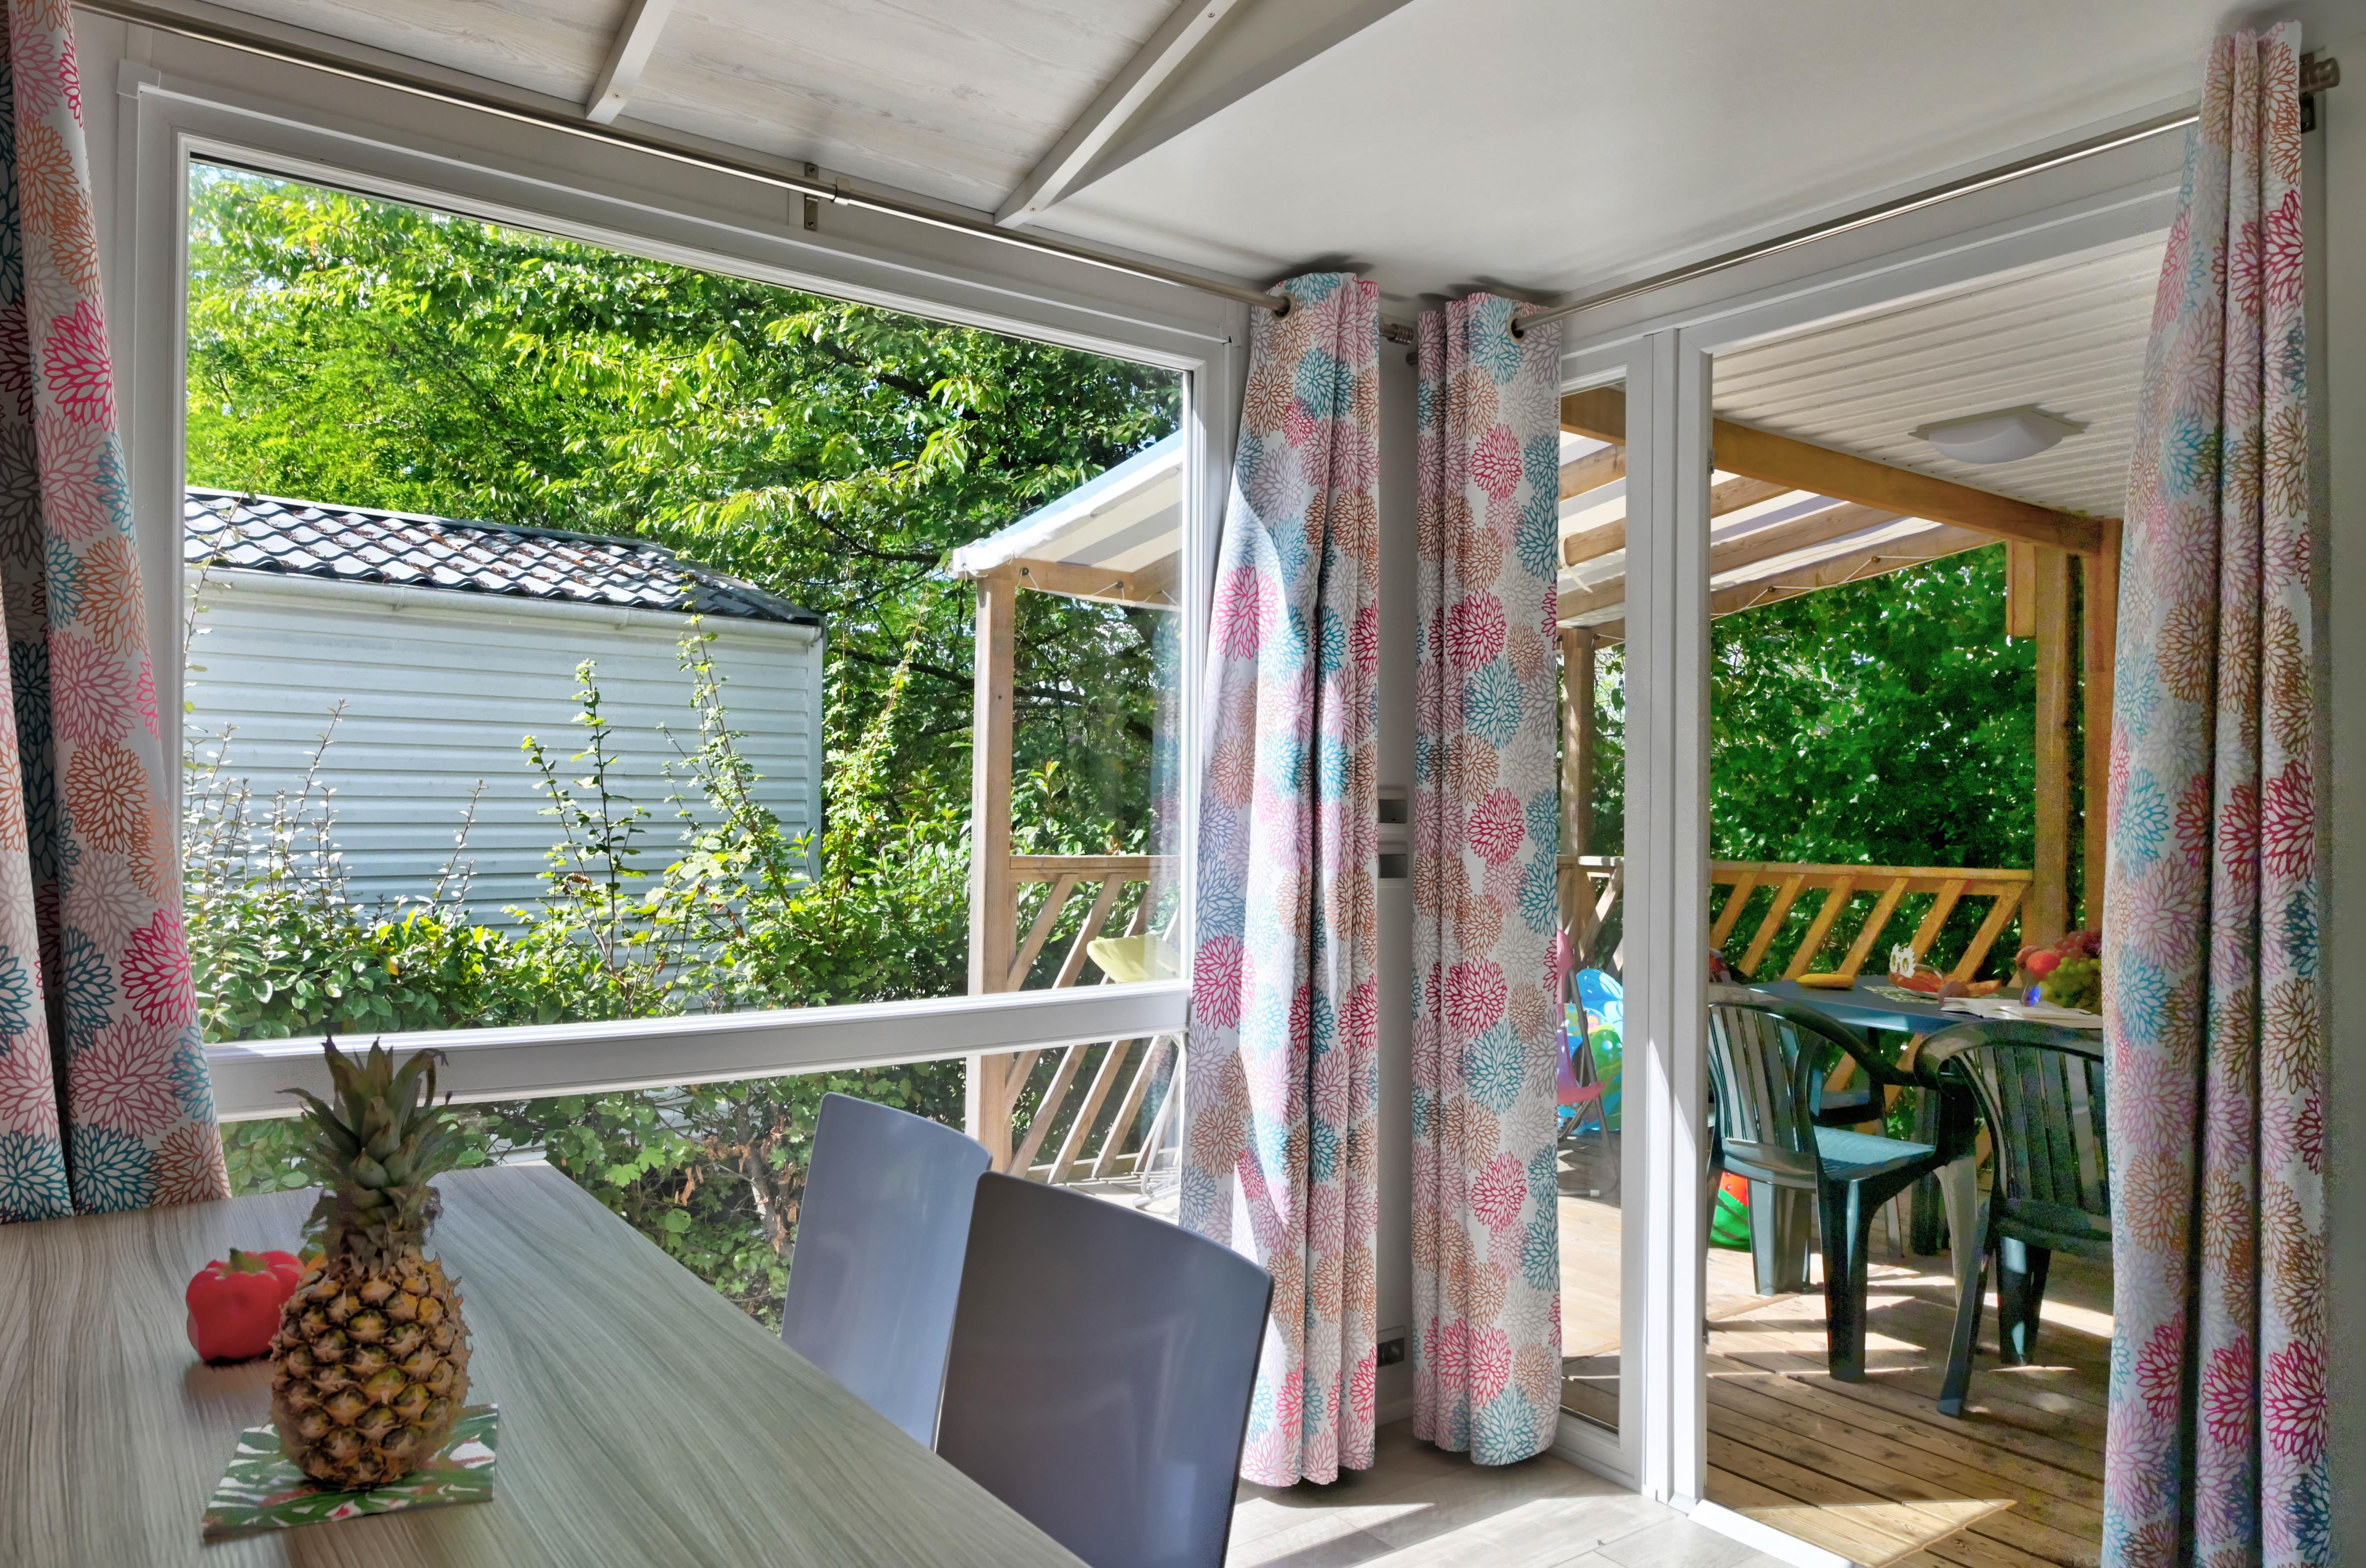 Location - Mobil Home Premium 27M² (2 Chambres) + Terrasse Couverte +Lave Vaisselle + Tv - Flower Camping La Chataigneraie